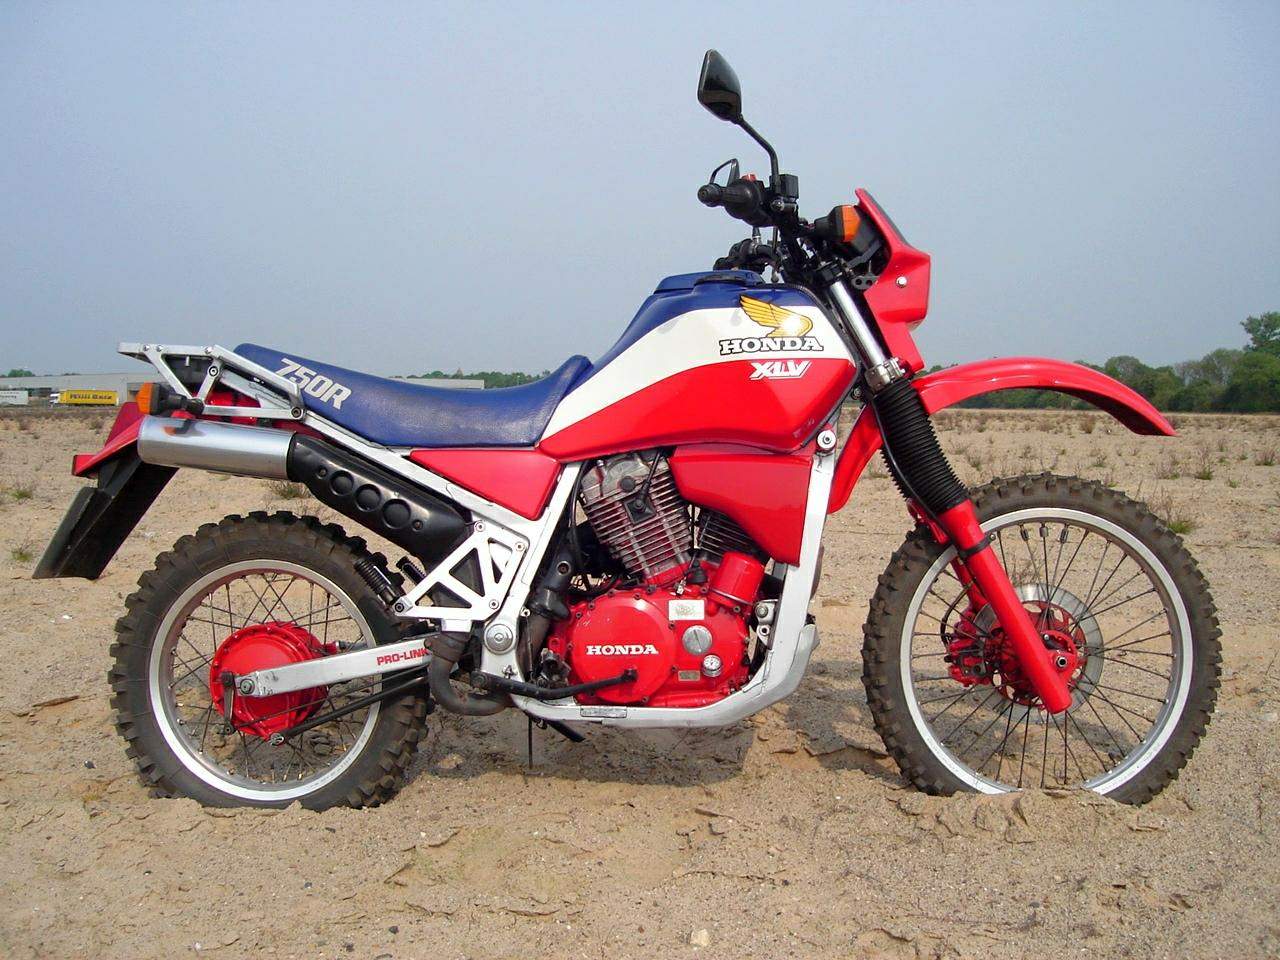 Мотоцикл Honda XLV 750R 1983 фото